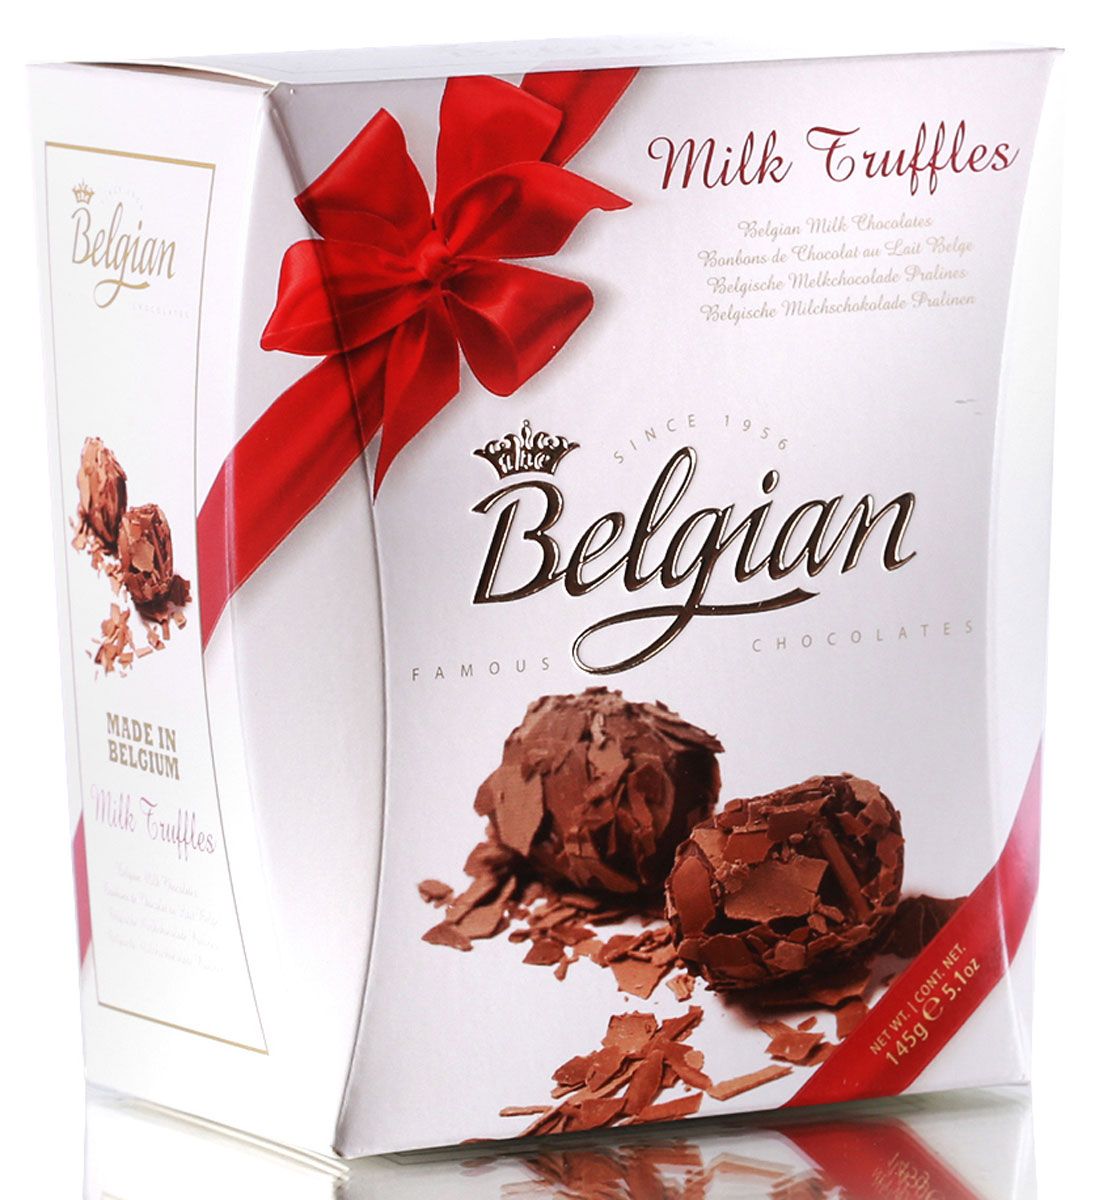 The Belgian Трюфели из молочного шоколада в хлопьях, 145 г